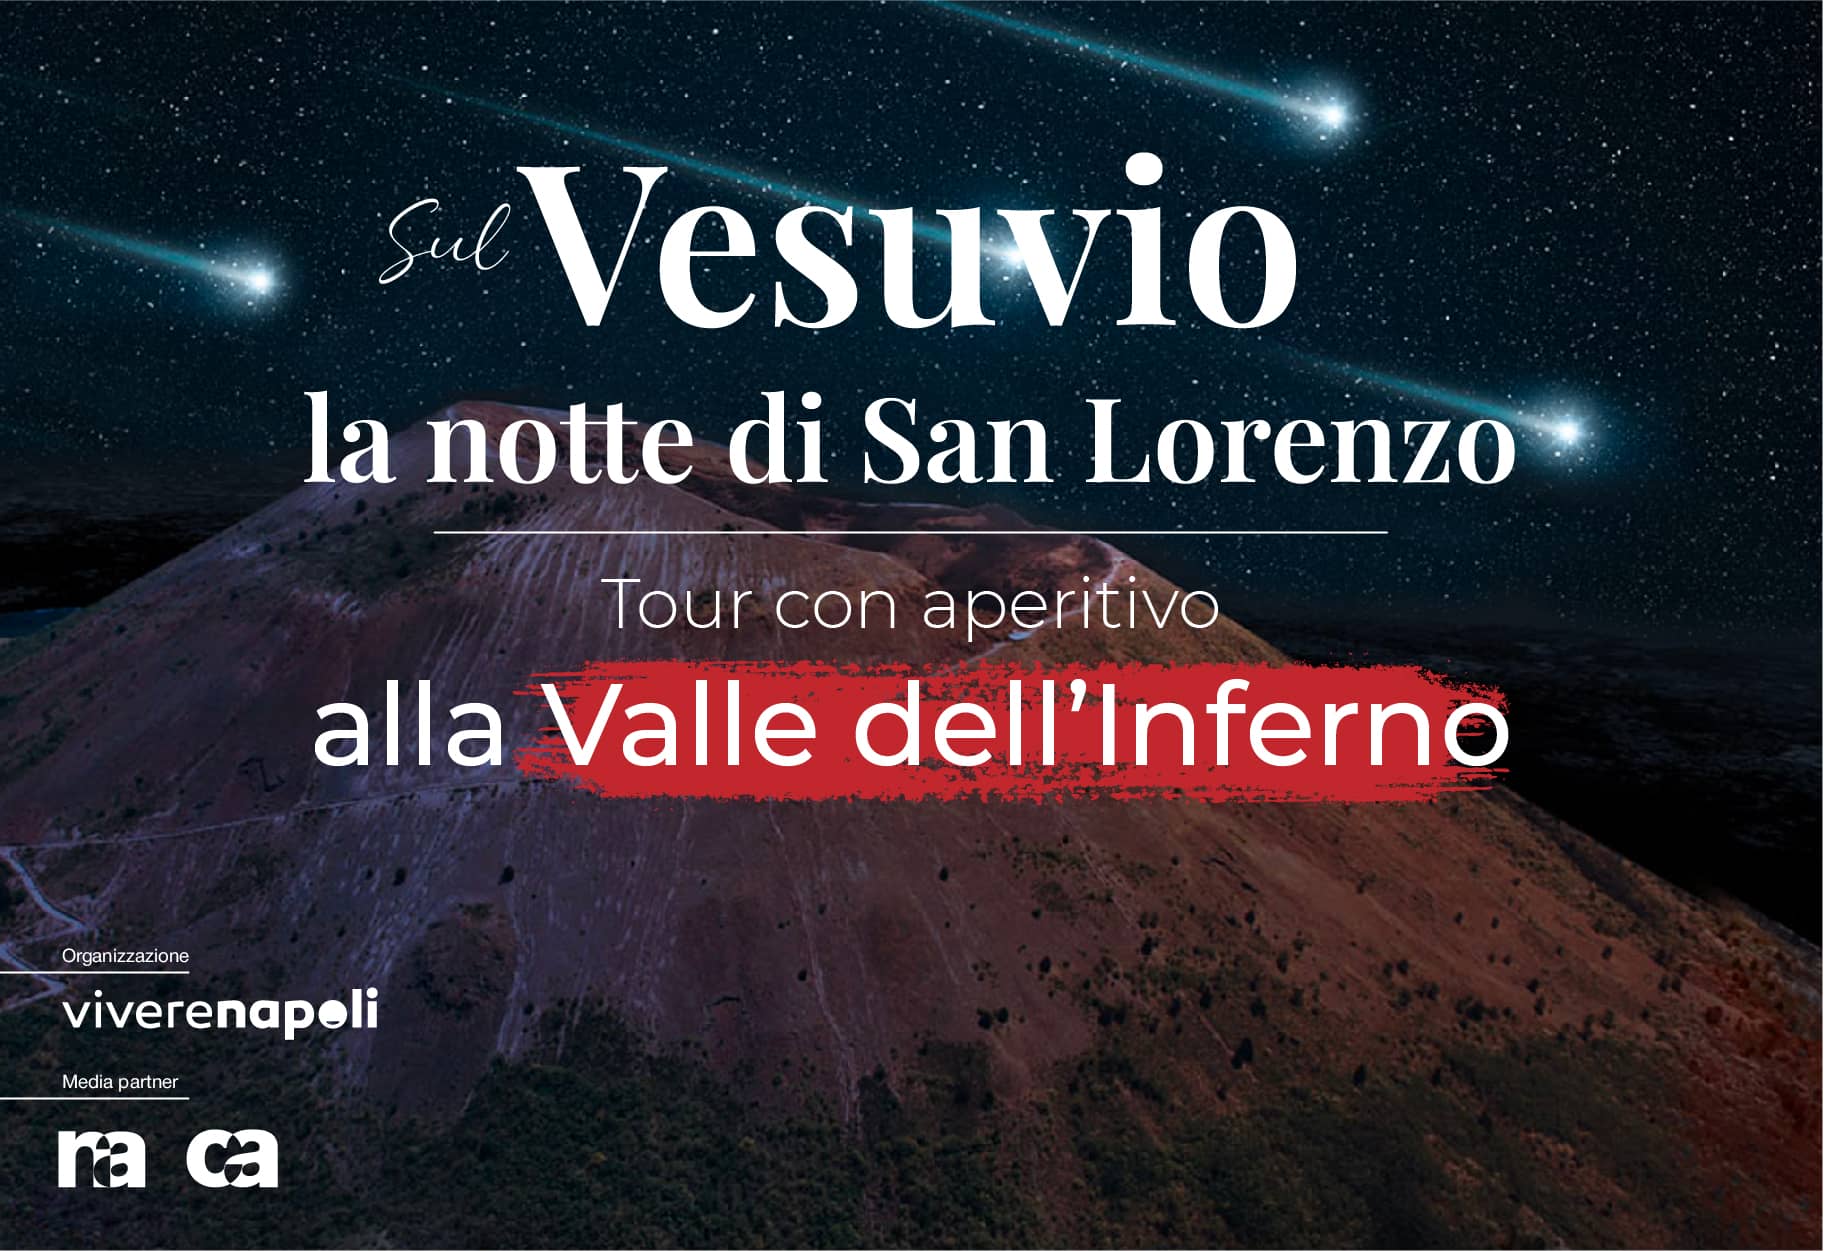 Tour alla Valle dell’Inferno del Vesuvio con aperitivo la notte di San Lorenzo